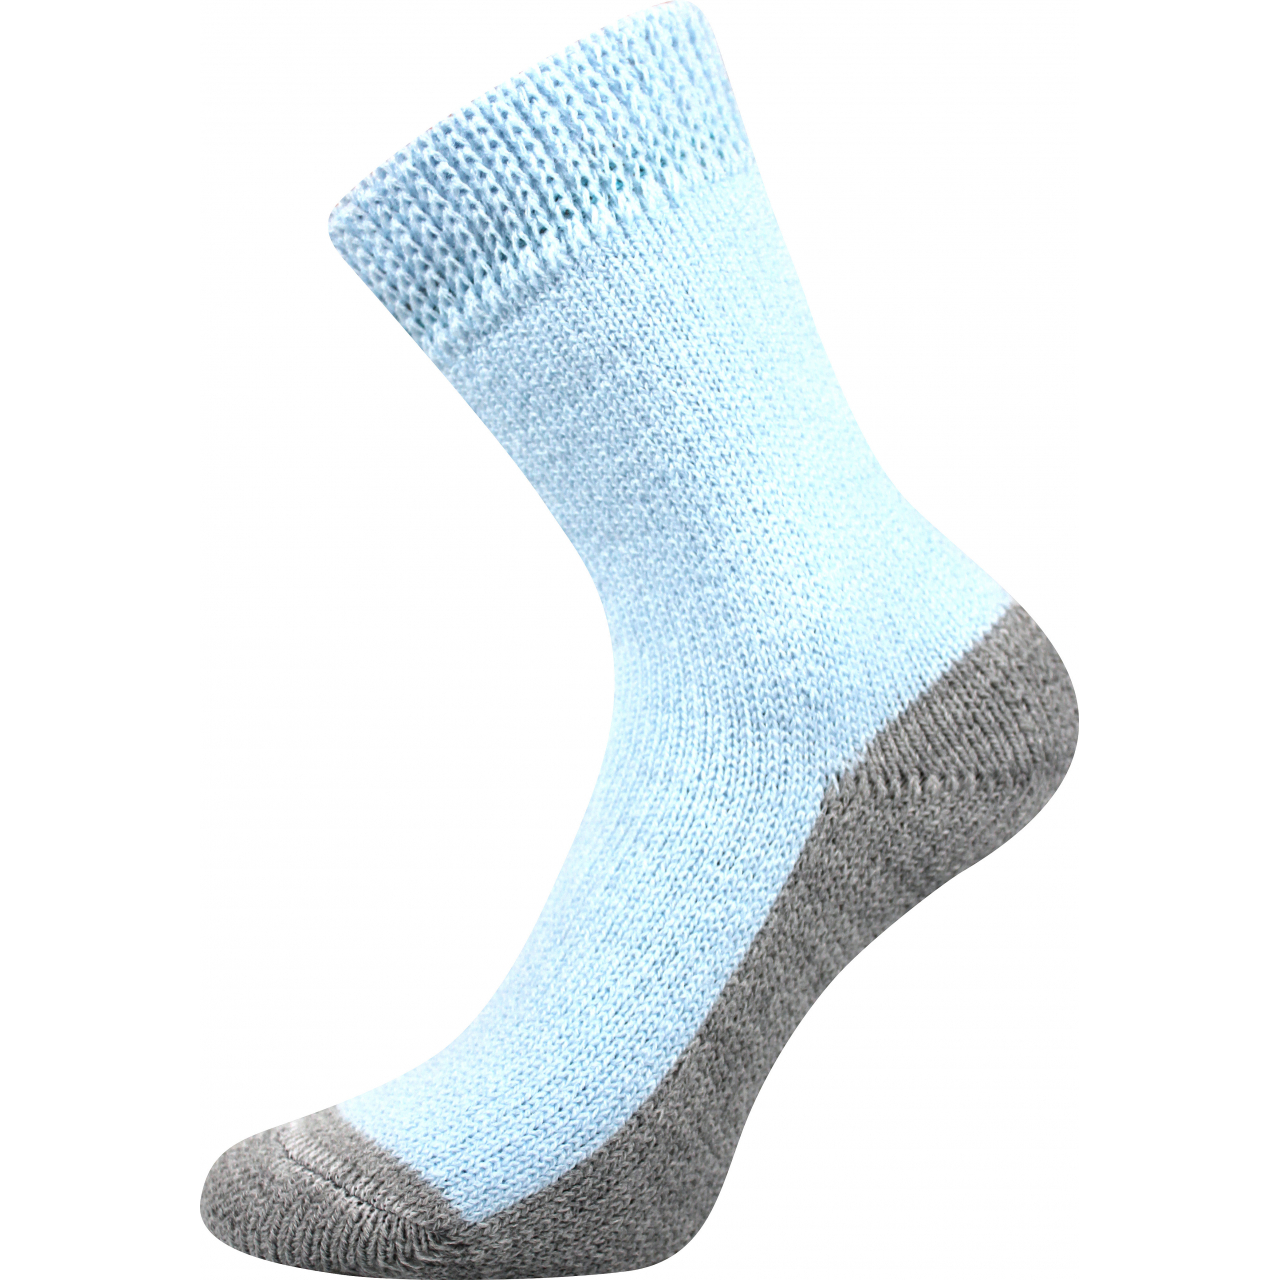 Ponožky unisex Boma Spací - světle modré, 35-38